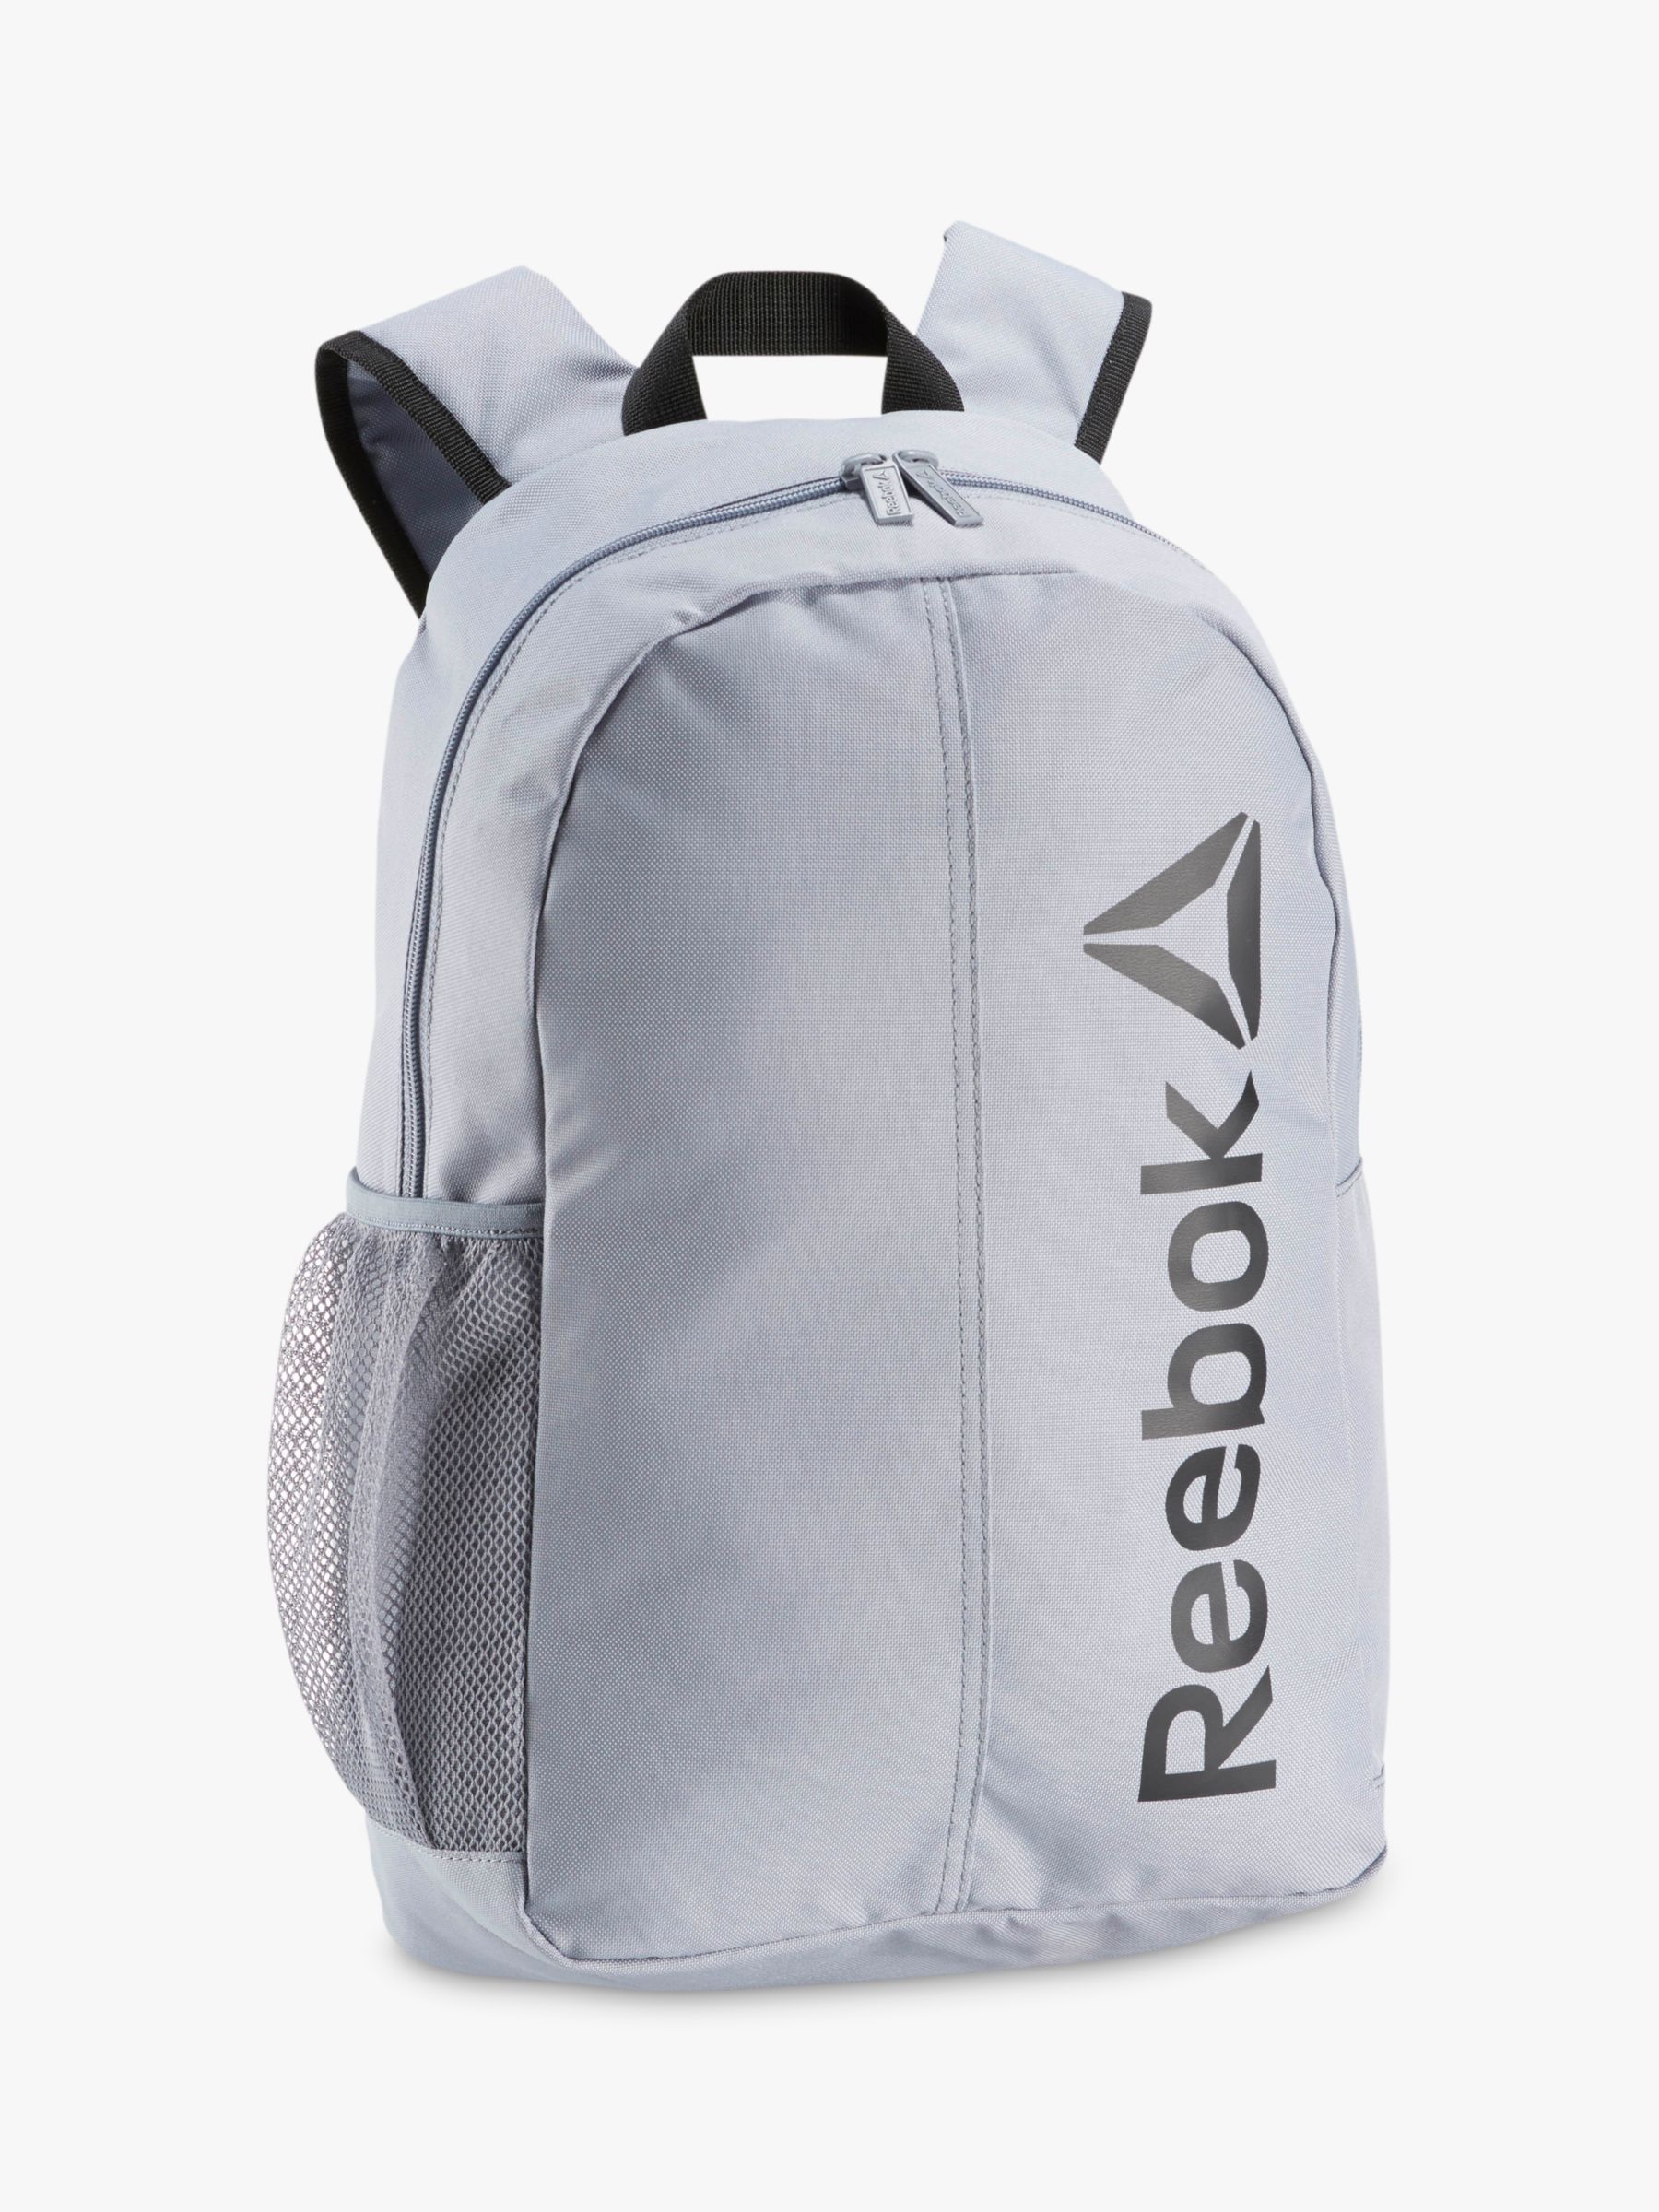 buy reebok backpacks